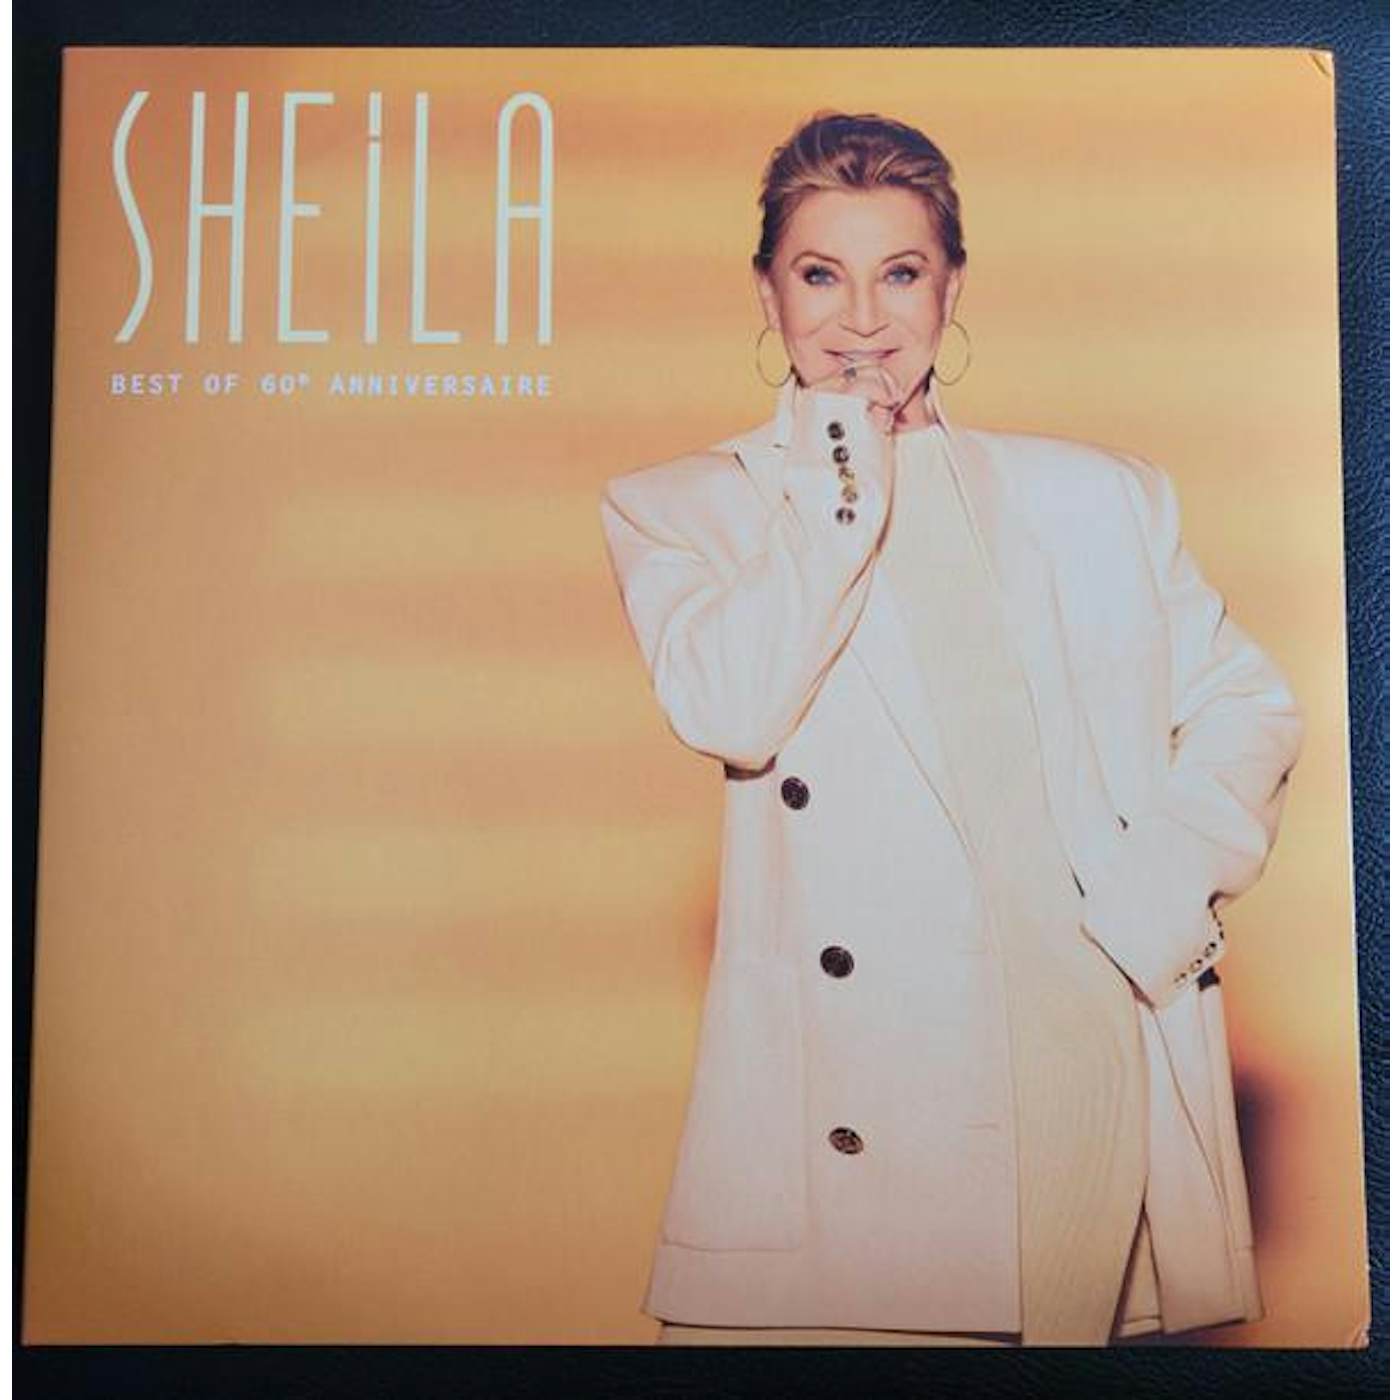 Sheila LES 60 ANS DE CARRIERE Vinyl Record